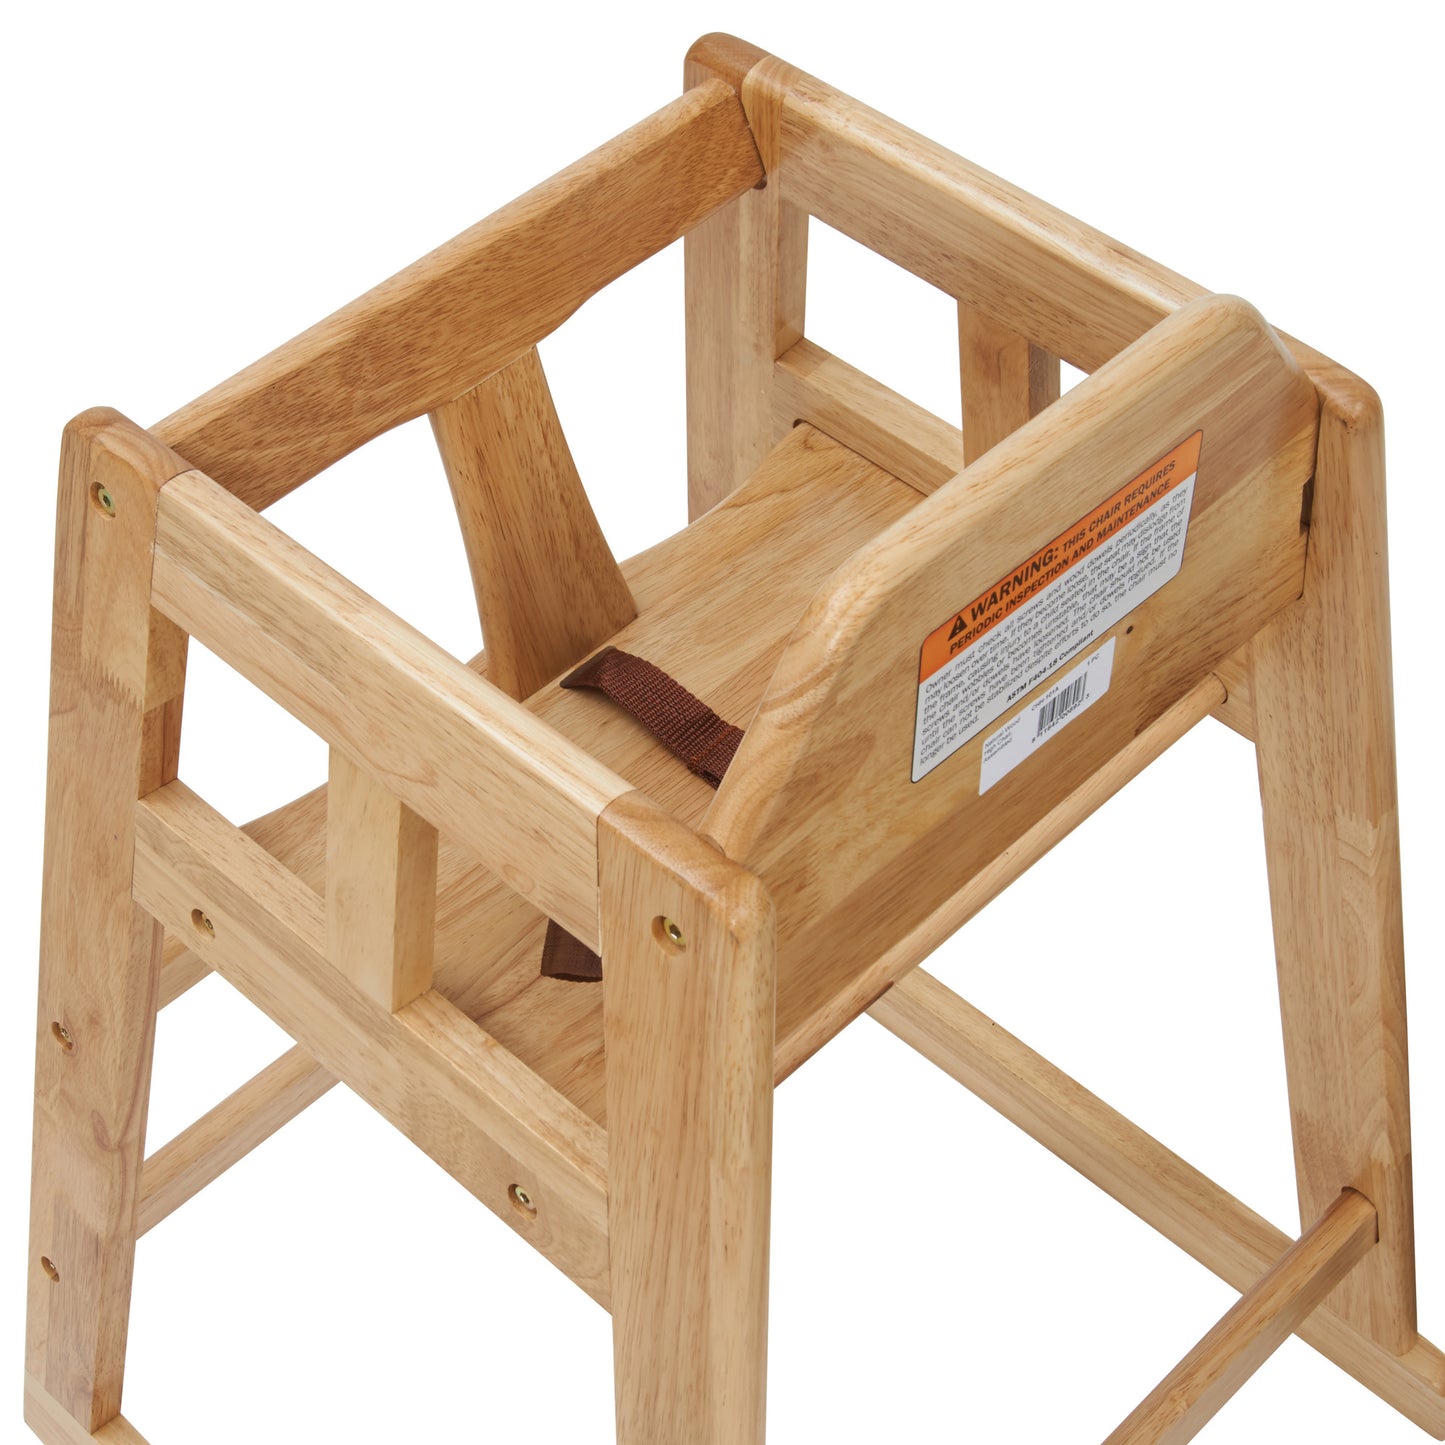 CHH-101A - Wooden High Chair, Assembled - Natural